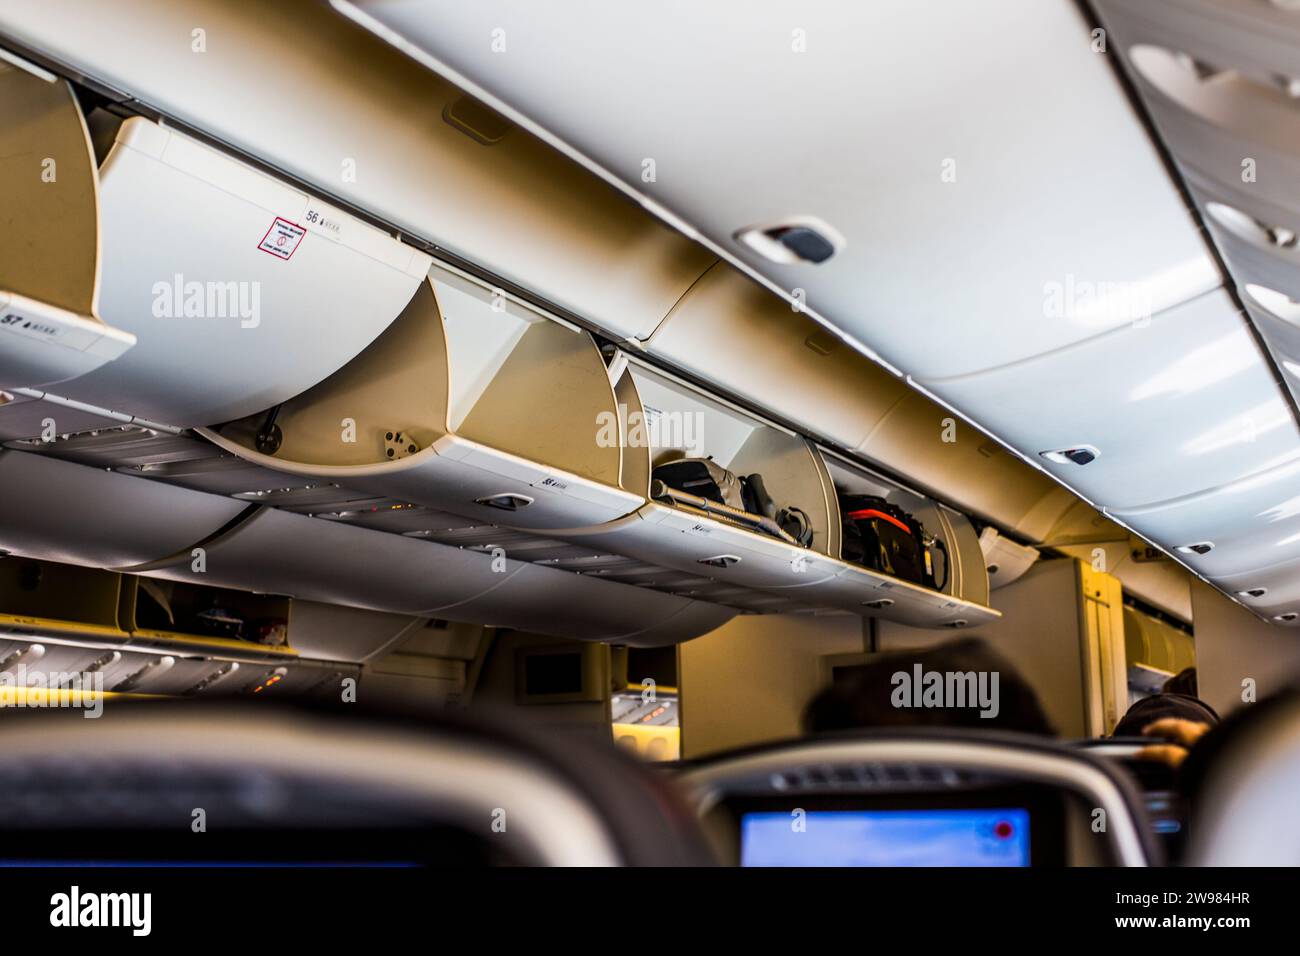 Contenedores de equipaje en el avión Foto de stock